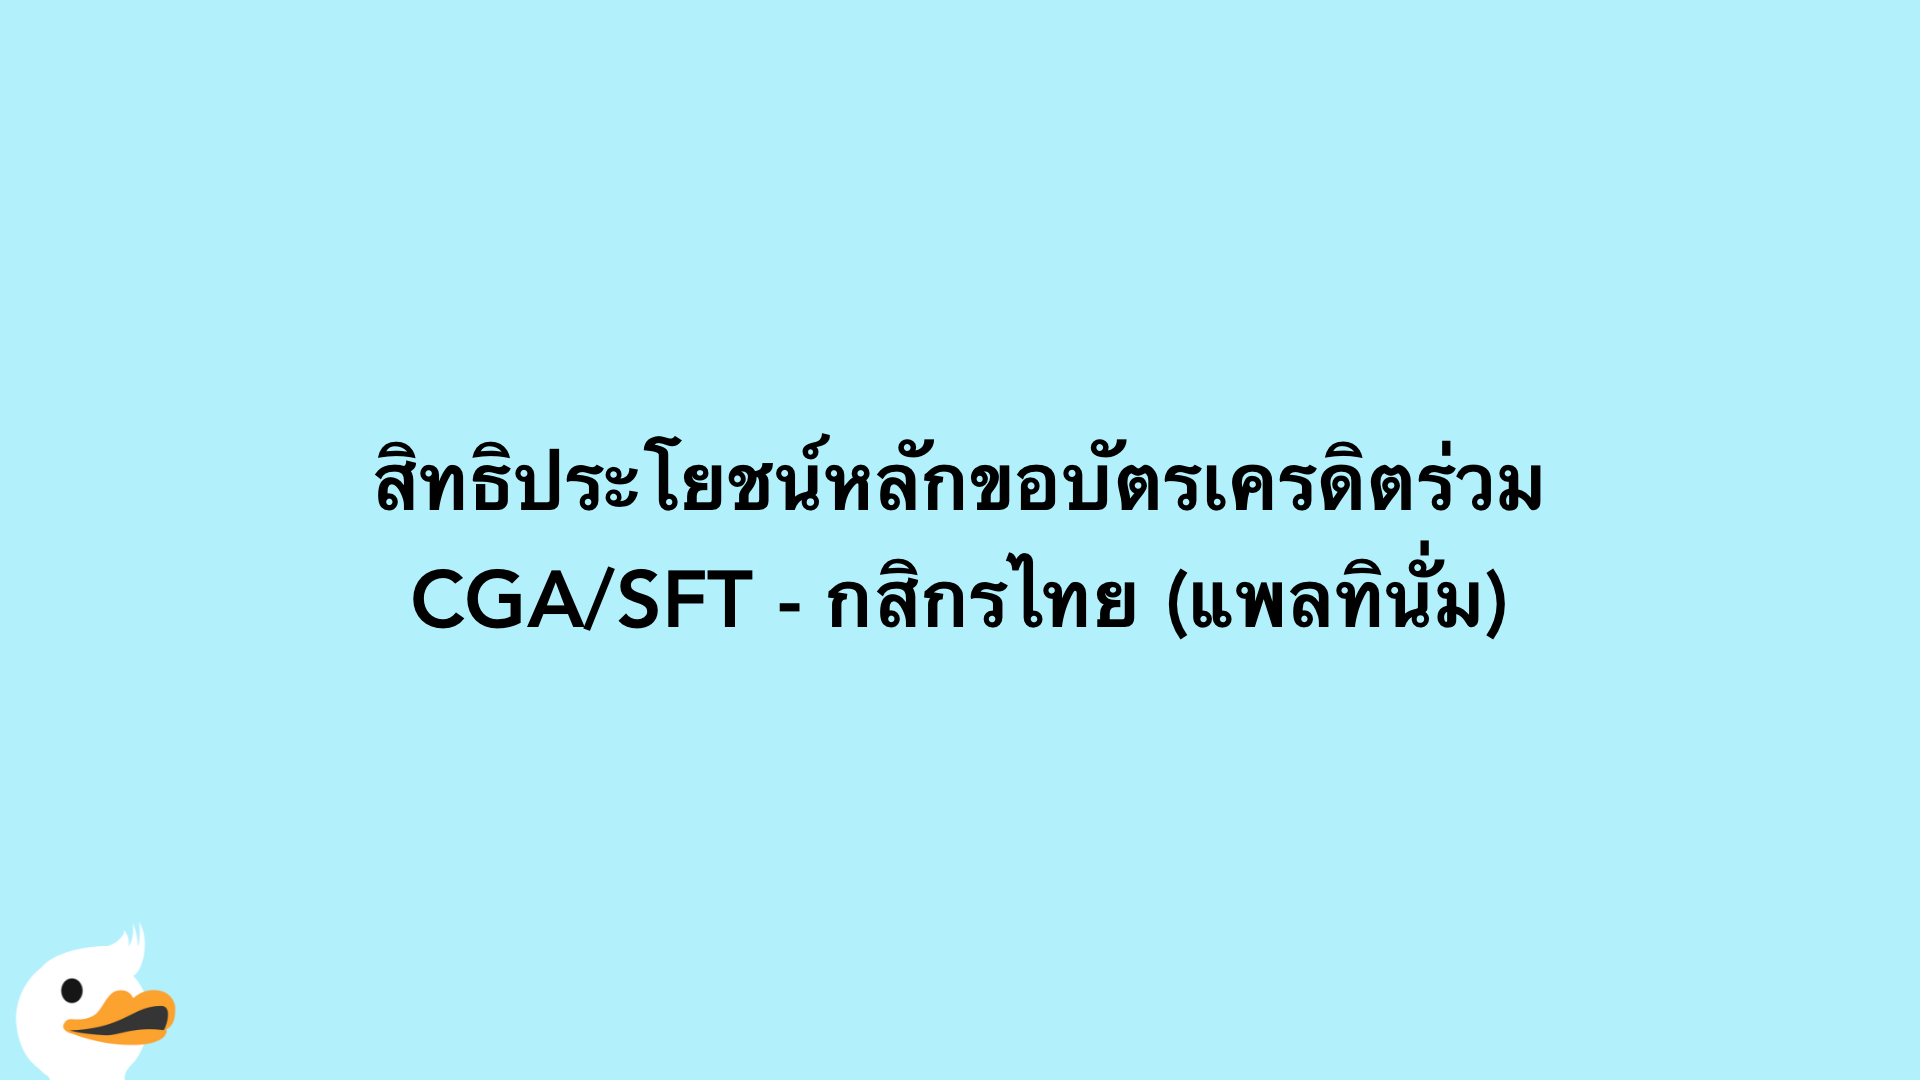 สิทธิประโยชน์หลักขอบัตรเครดิตร่วม CGA/SFT - กสิกรไทย (แพลทินั่ม)